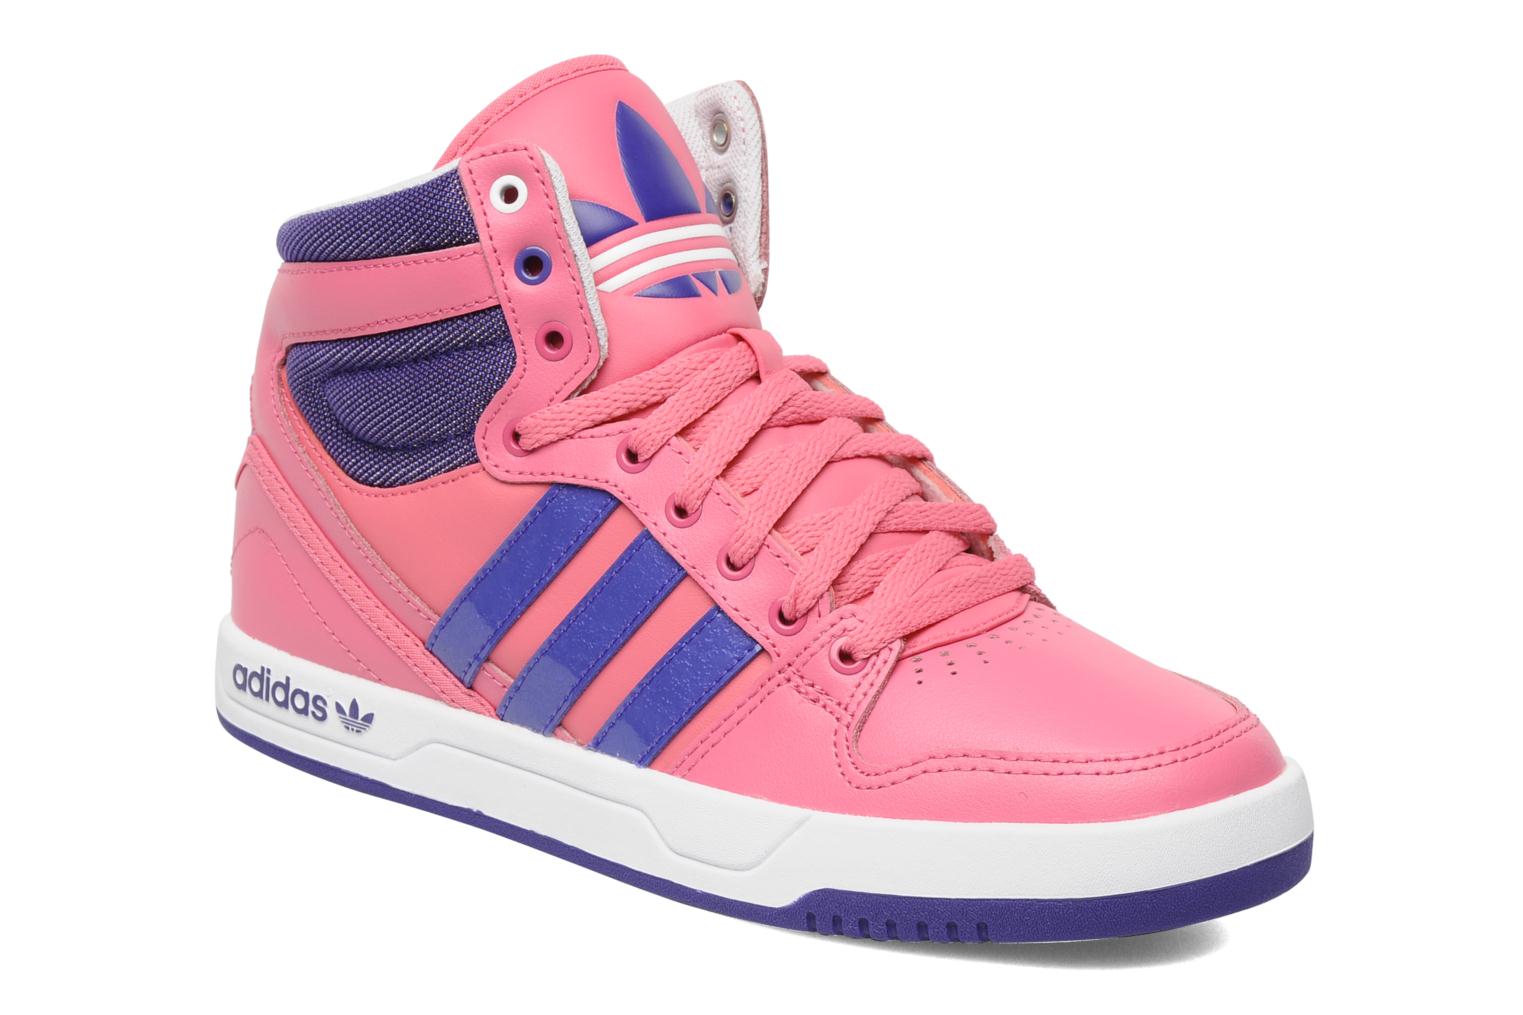 Adidas Originals Court Attitude J Trainers in Pink at Sarenza.co.uk ...